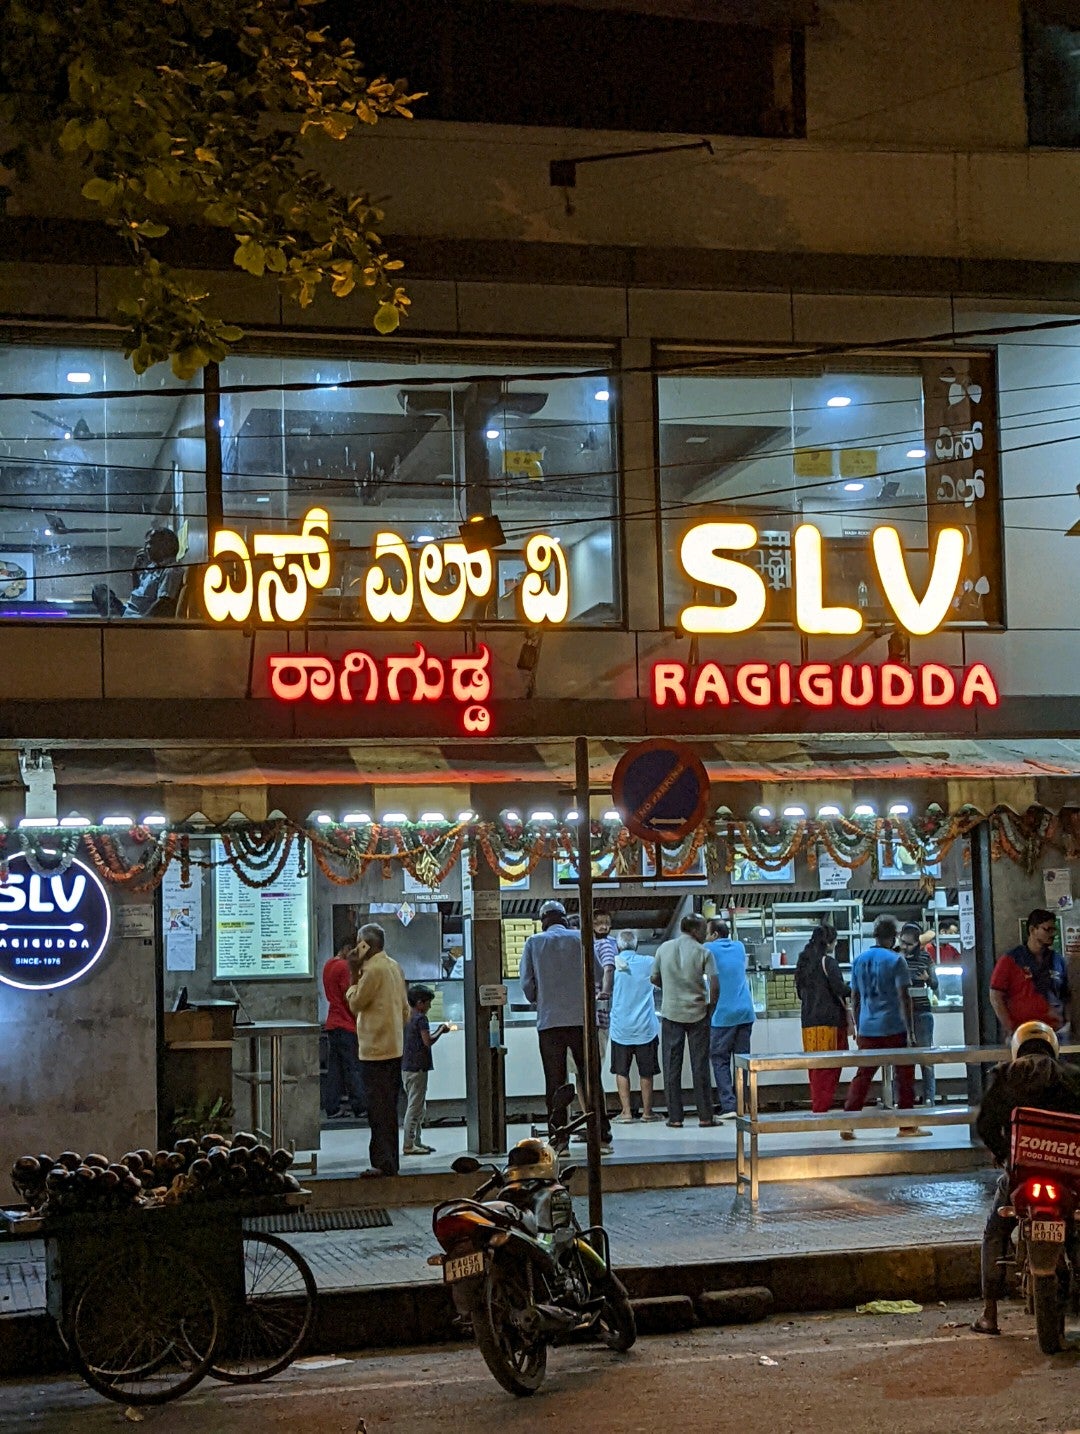 SLV Ragigudda